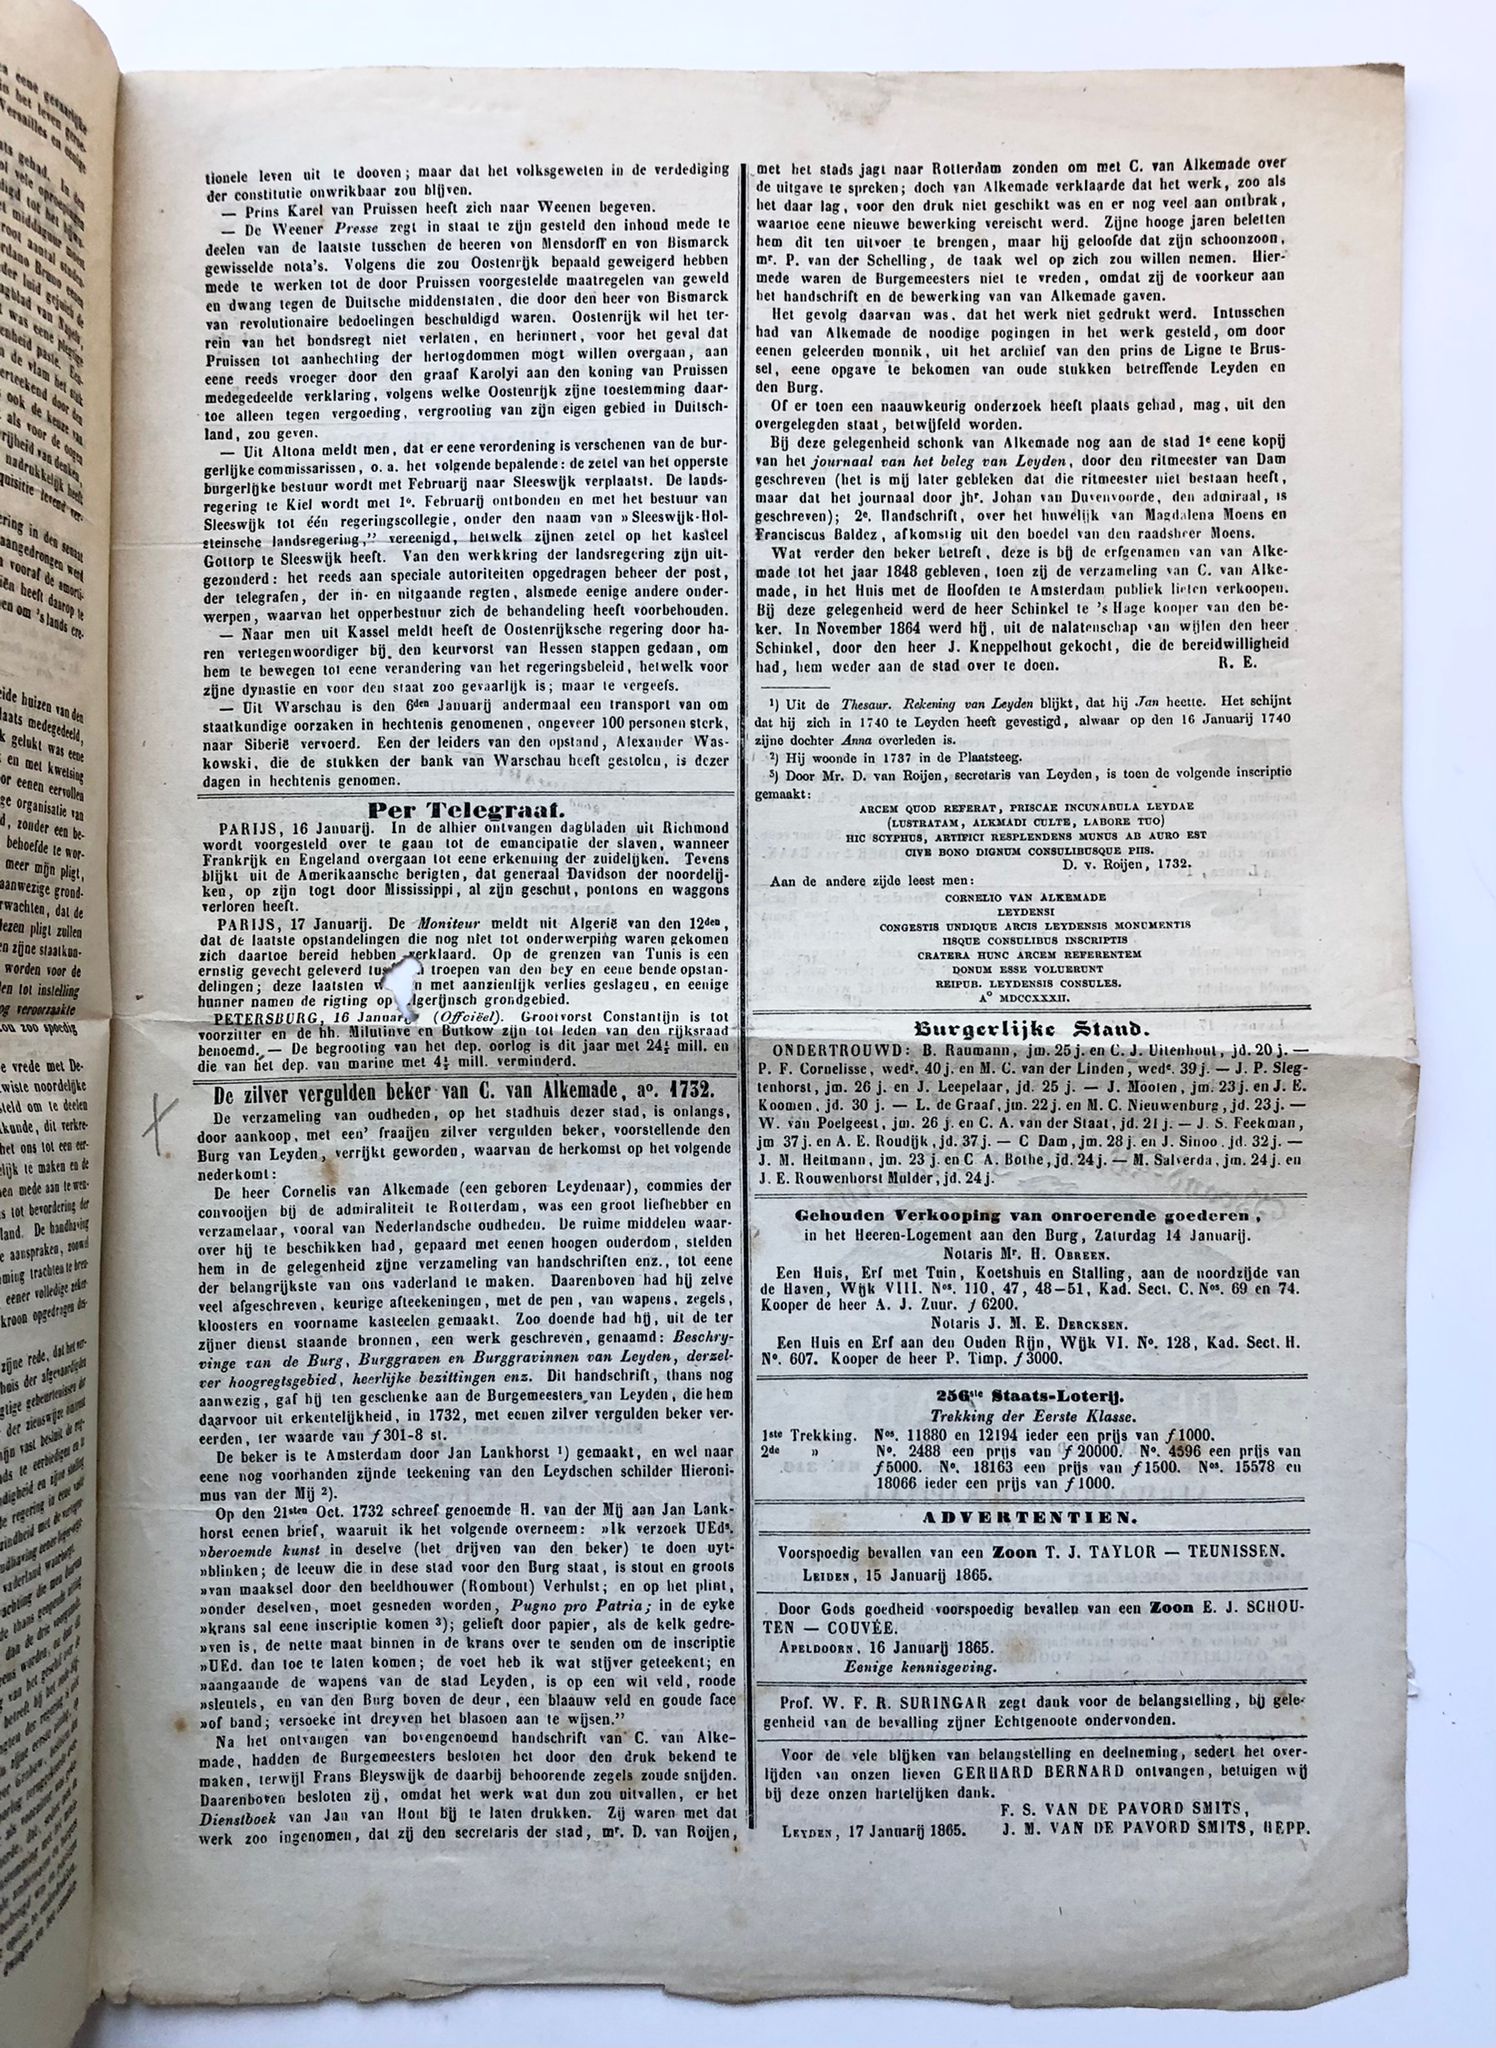 [Newspaper, Leiden, 1865] Artikel 'De zilver vergulden beker van C. van Alkemade Ao- 1732'. Door R[ammelman] E[lsevier], afgedrukt in Leydsche Courant 18-1-1865.